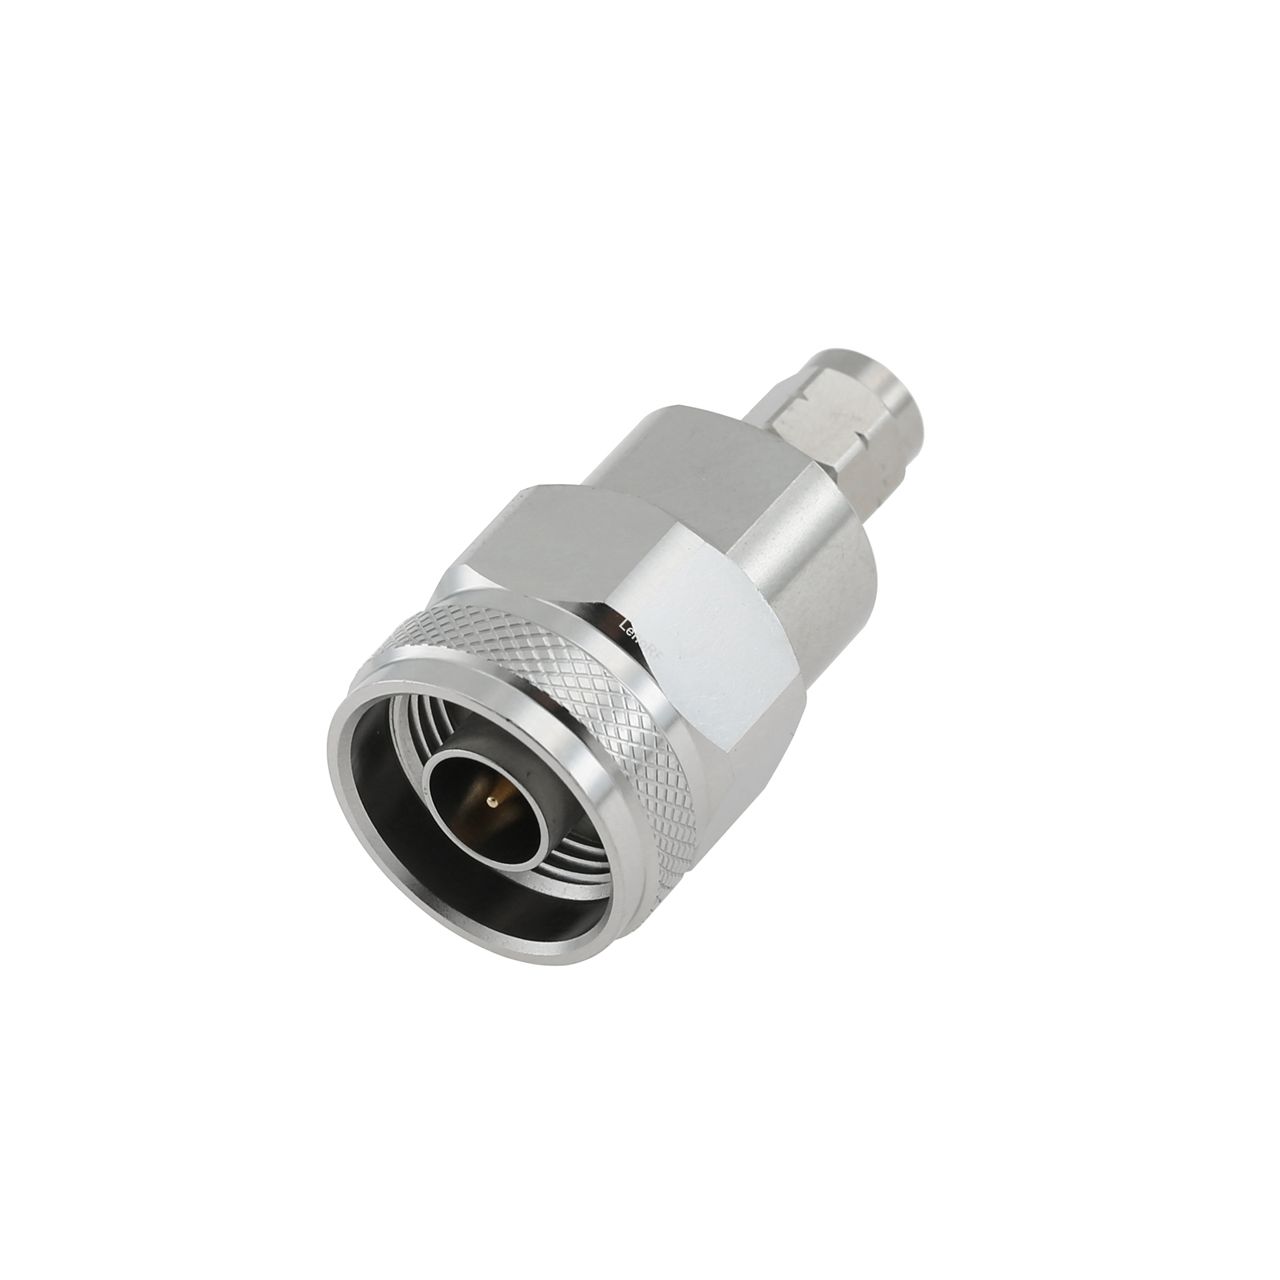 2.4 mm Plug to N Plug Adapter 50 OHM Straight 